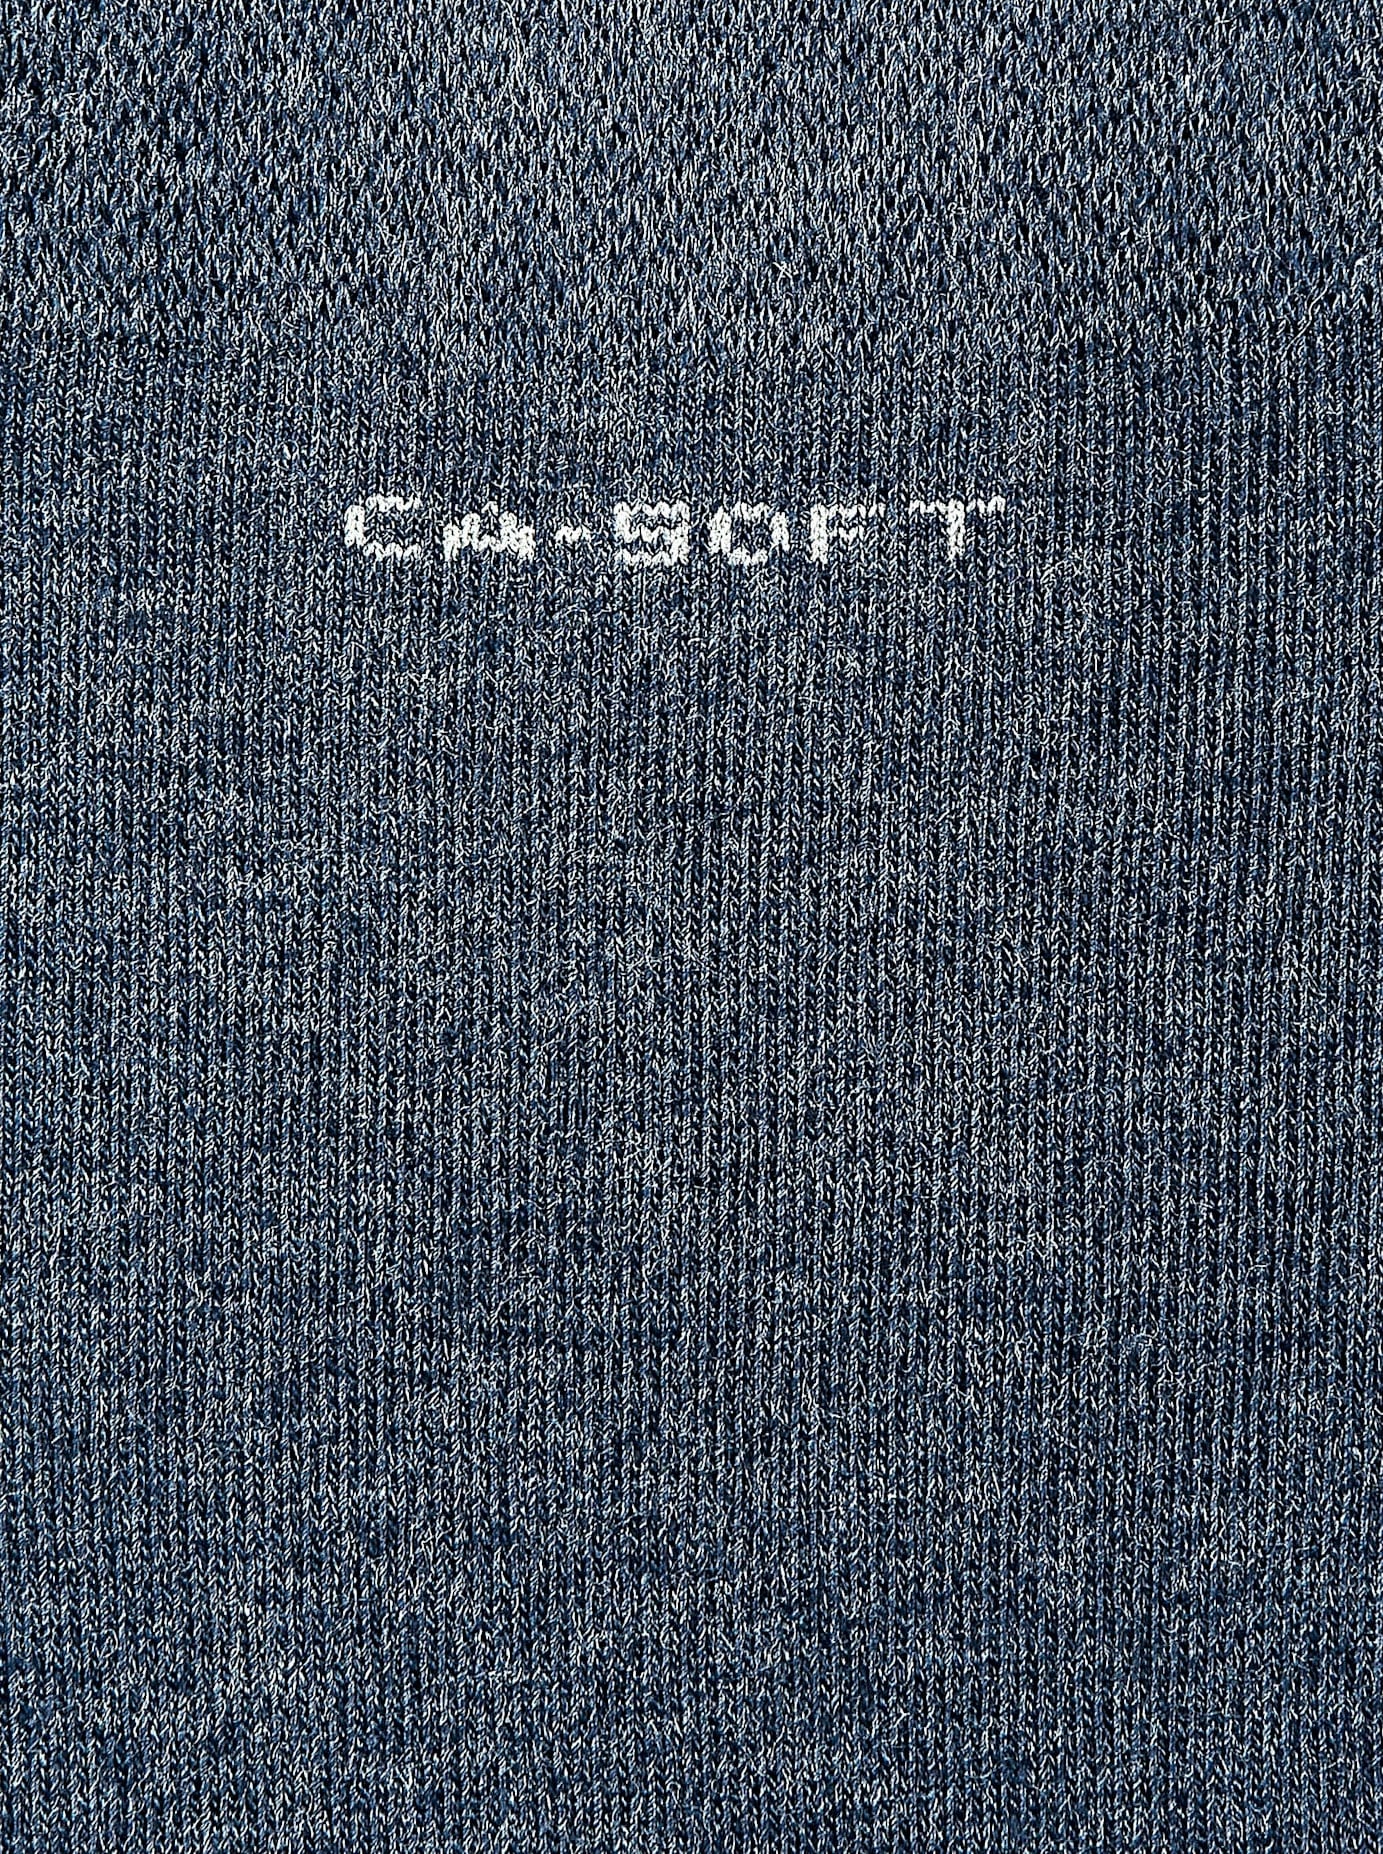 Camano Socken, (4 Paar) von CAMANO